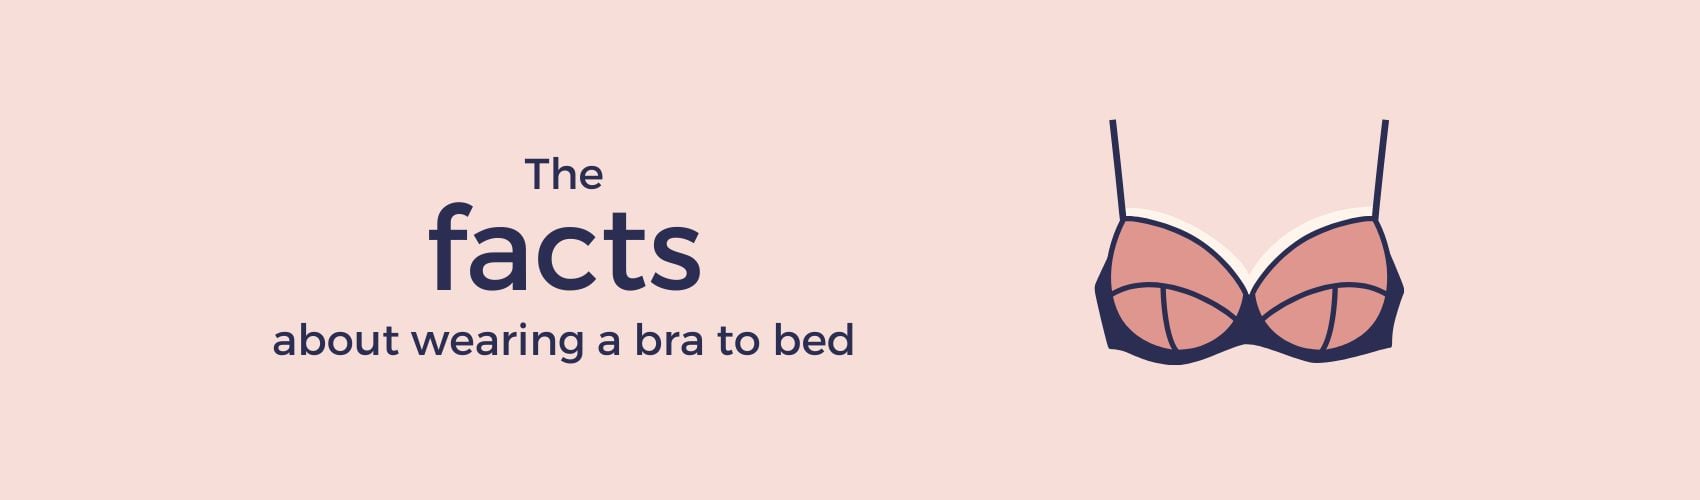 Is It Okay to Wear a Bra While Sleeping? - Skinnedcartree